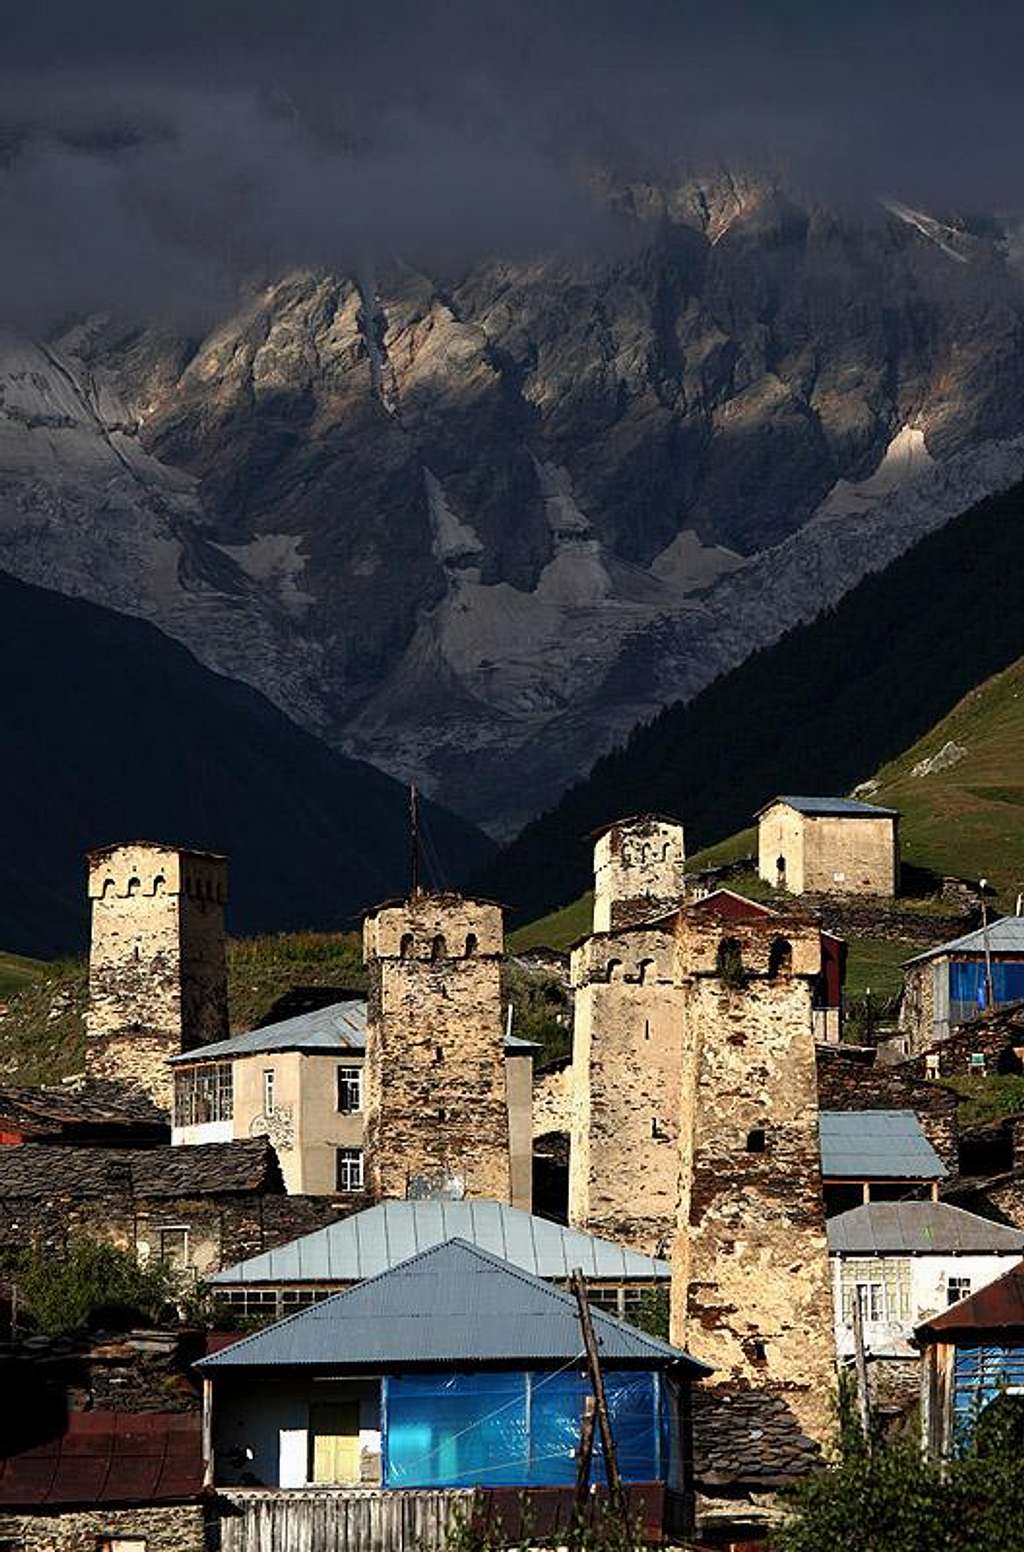 Svanetia. Ushguli village and Shkhara behind 